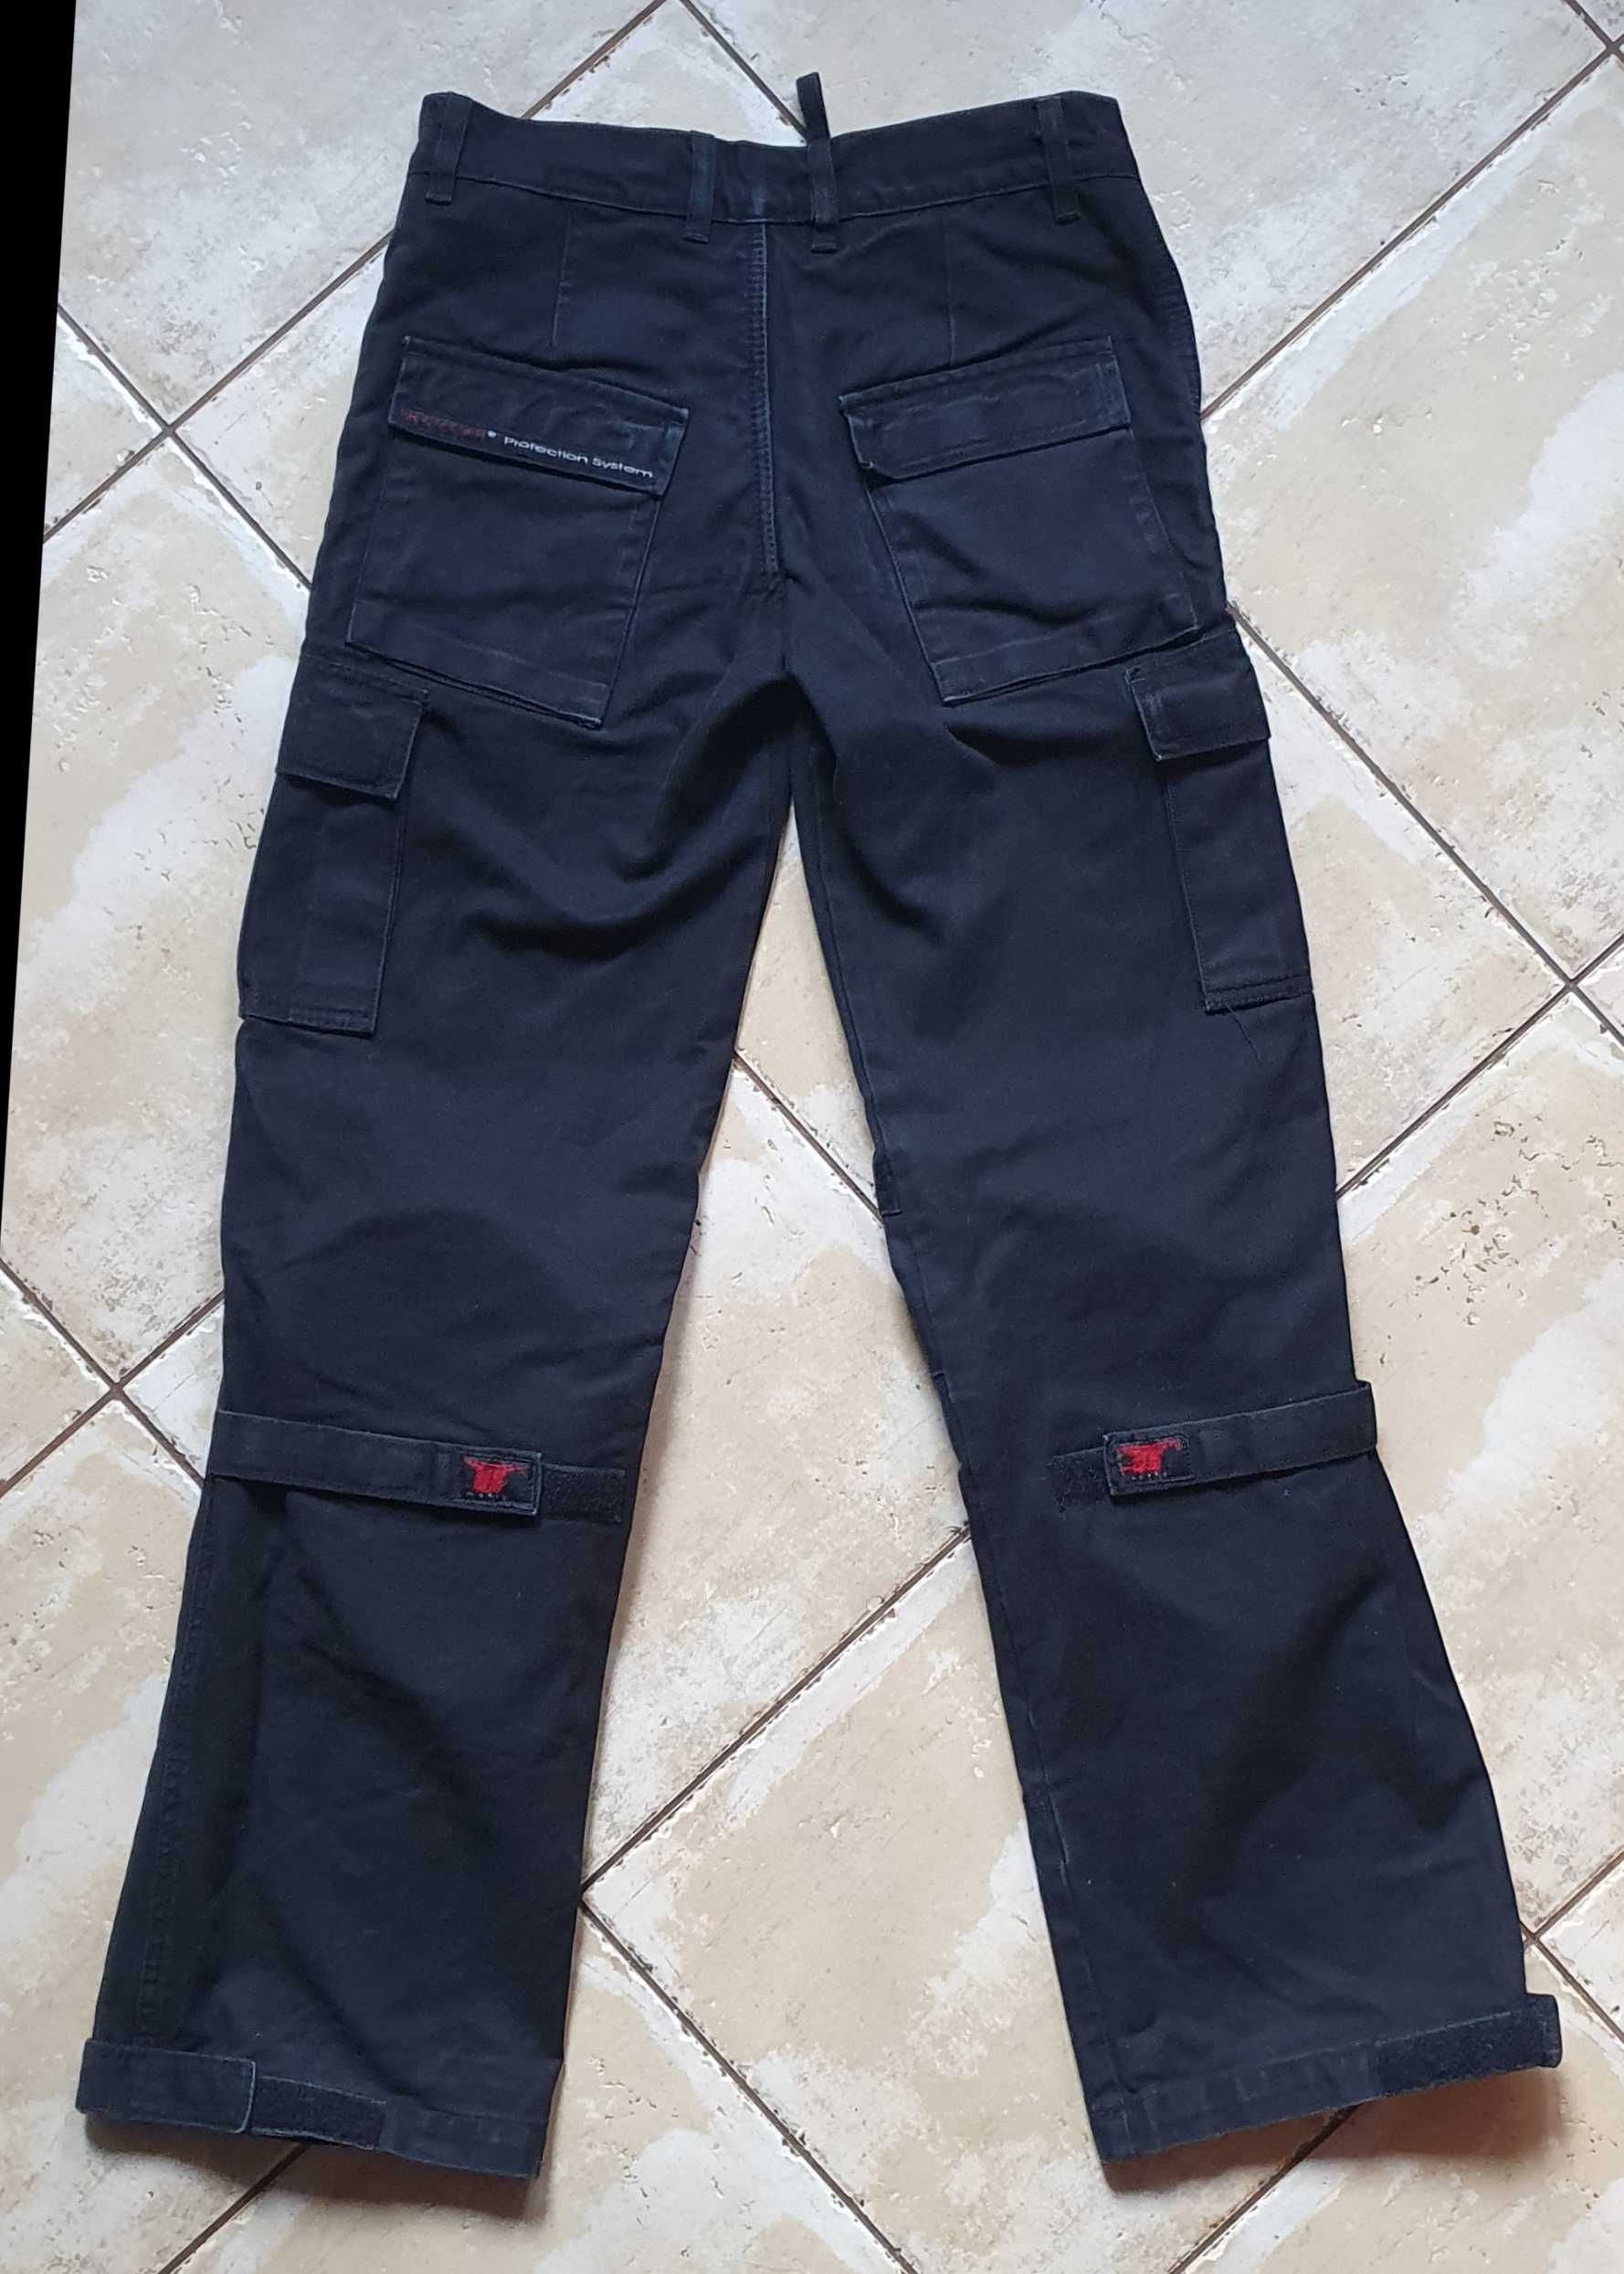 Spodnie motocyklowe jeansy/bojówki/cargo firmy Motto rozm. XS